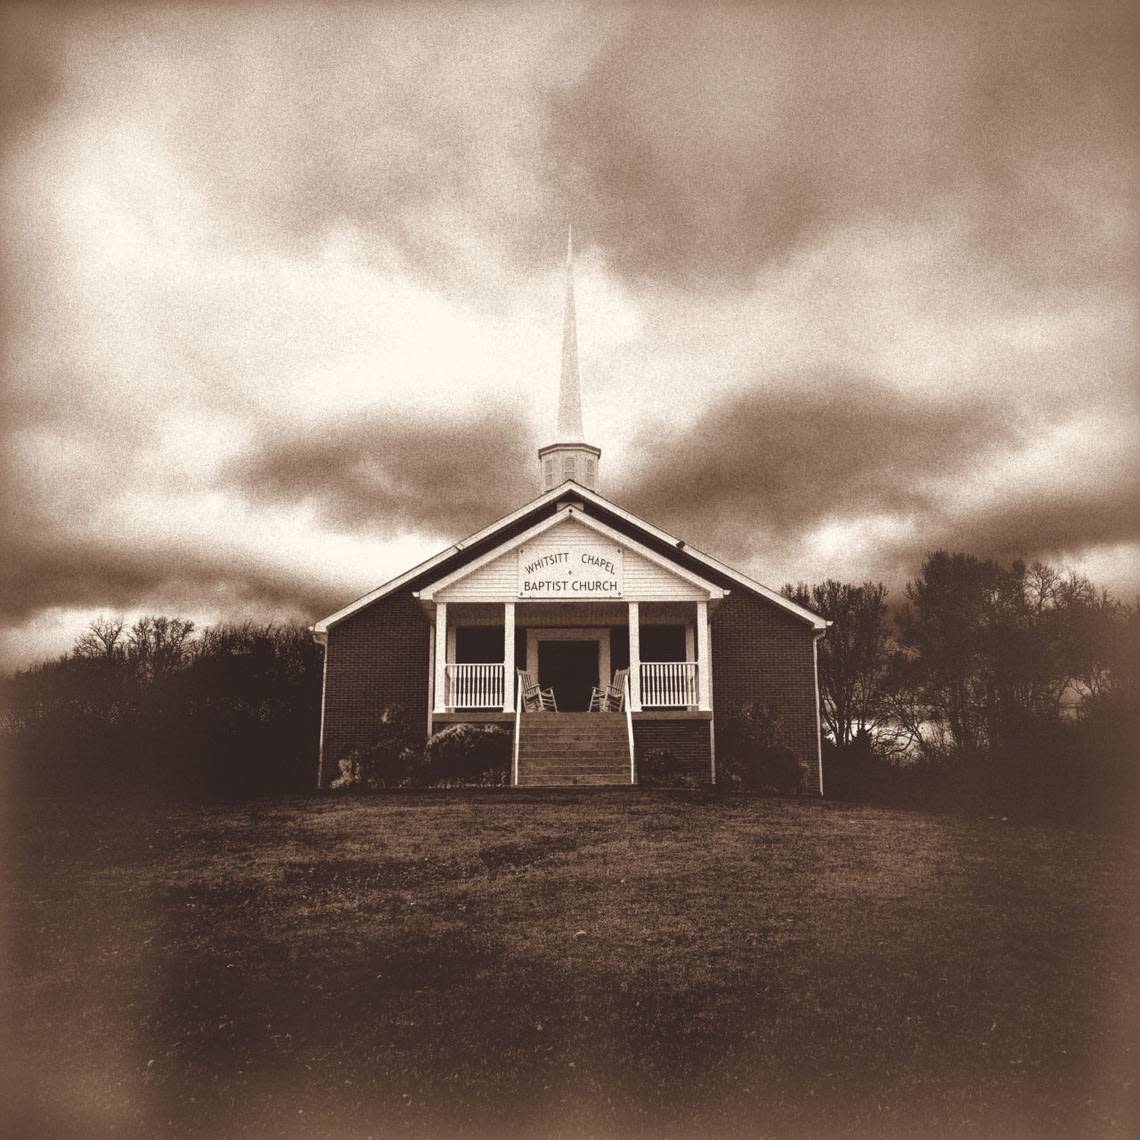 Jelly Roll’s album “Whitsitt Chapel” was released in June 2023.